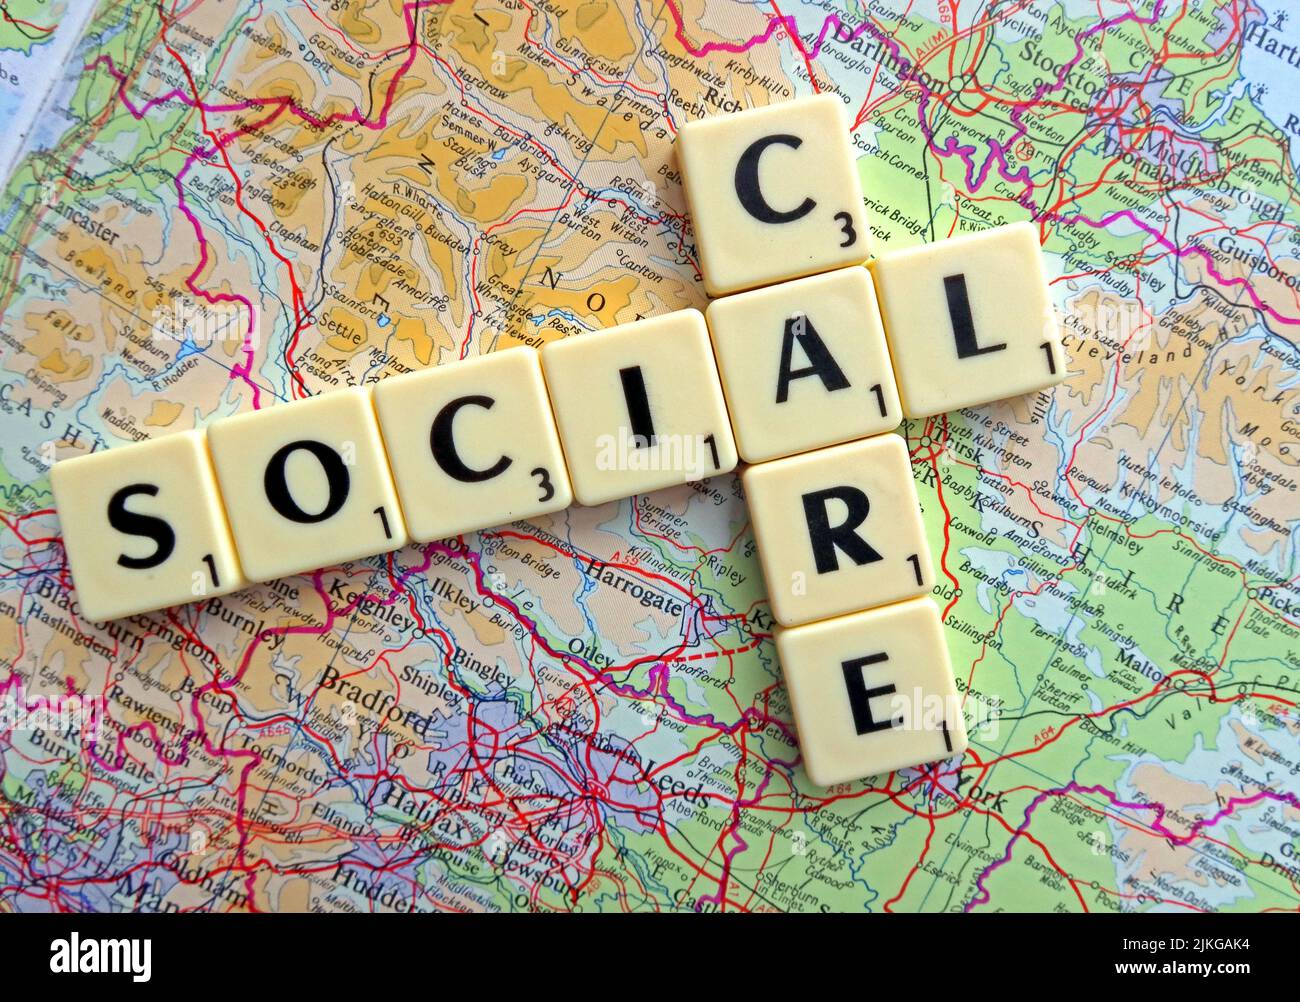 Social Care écrit en lettres Scrabble sur une carte de l'Angleterre Banque D'Images